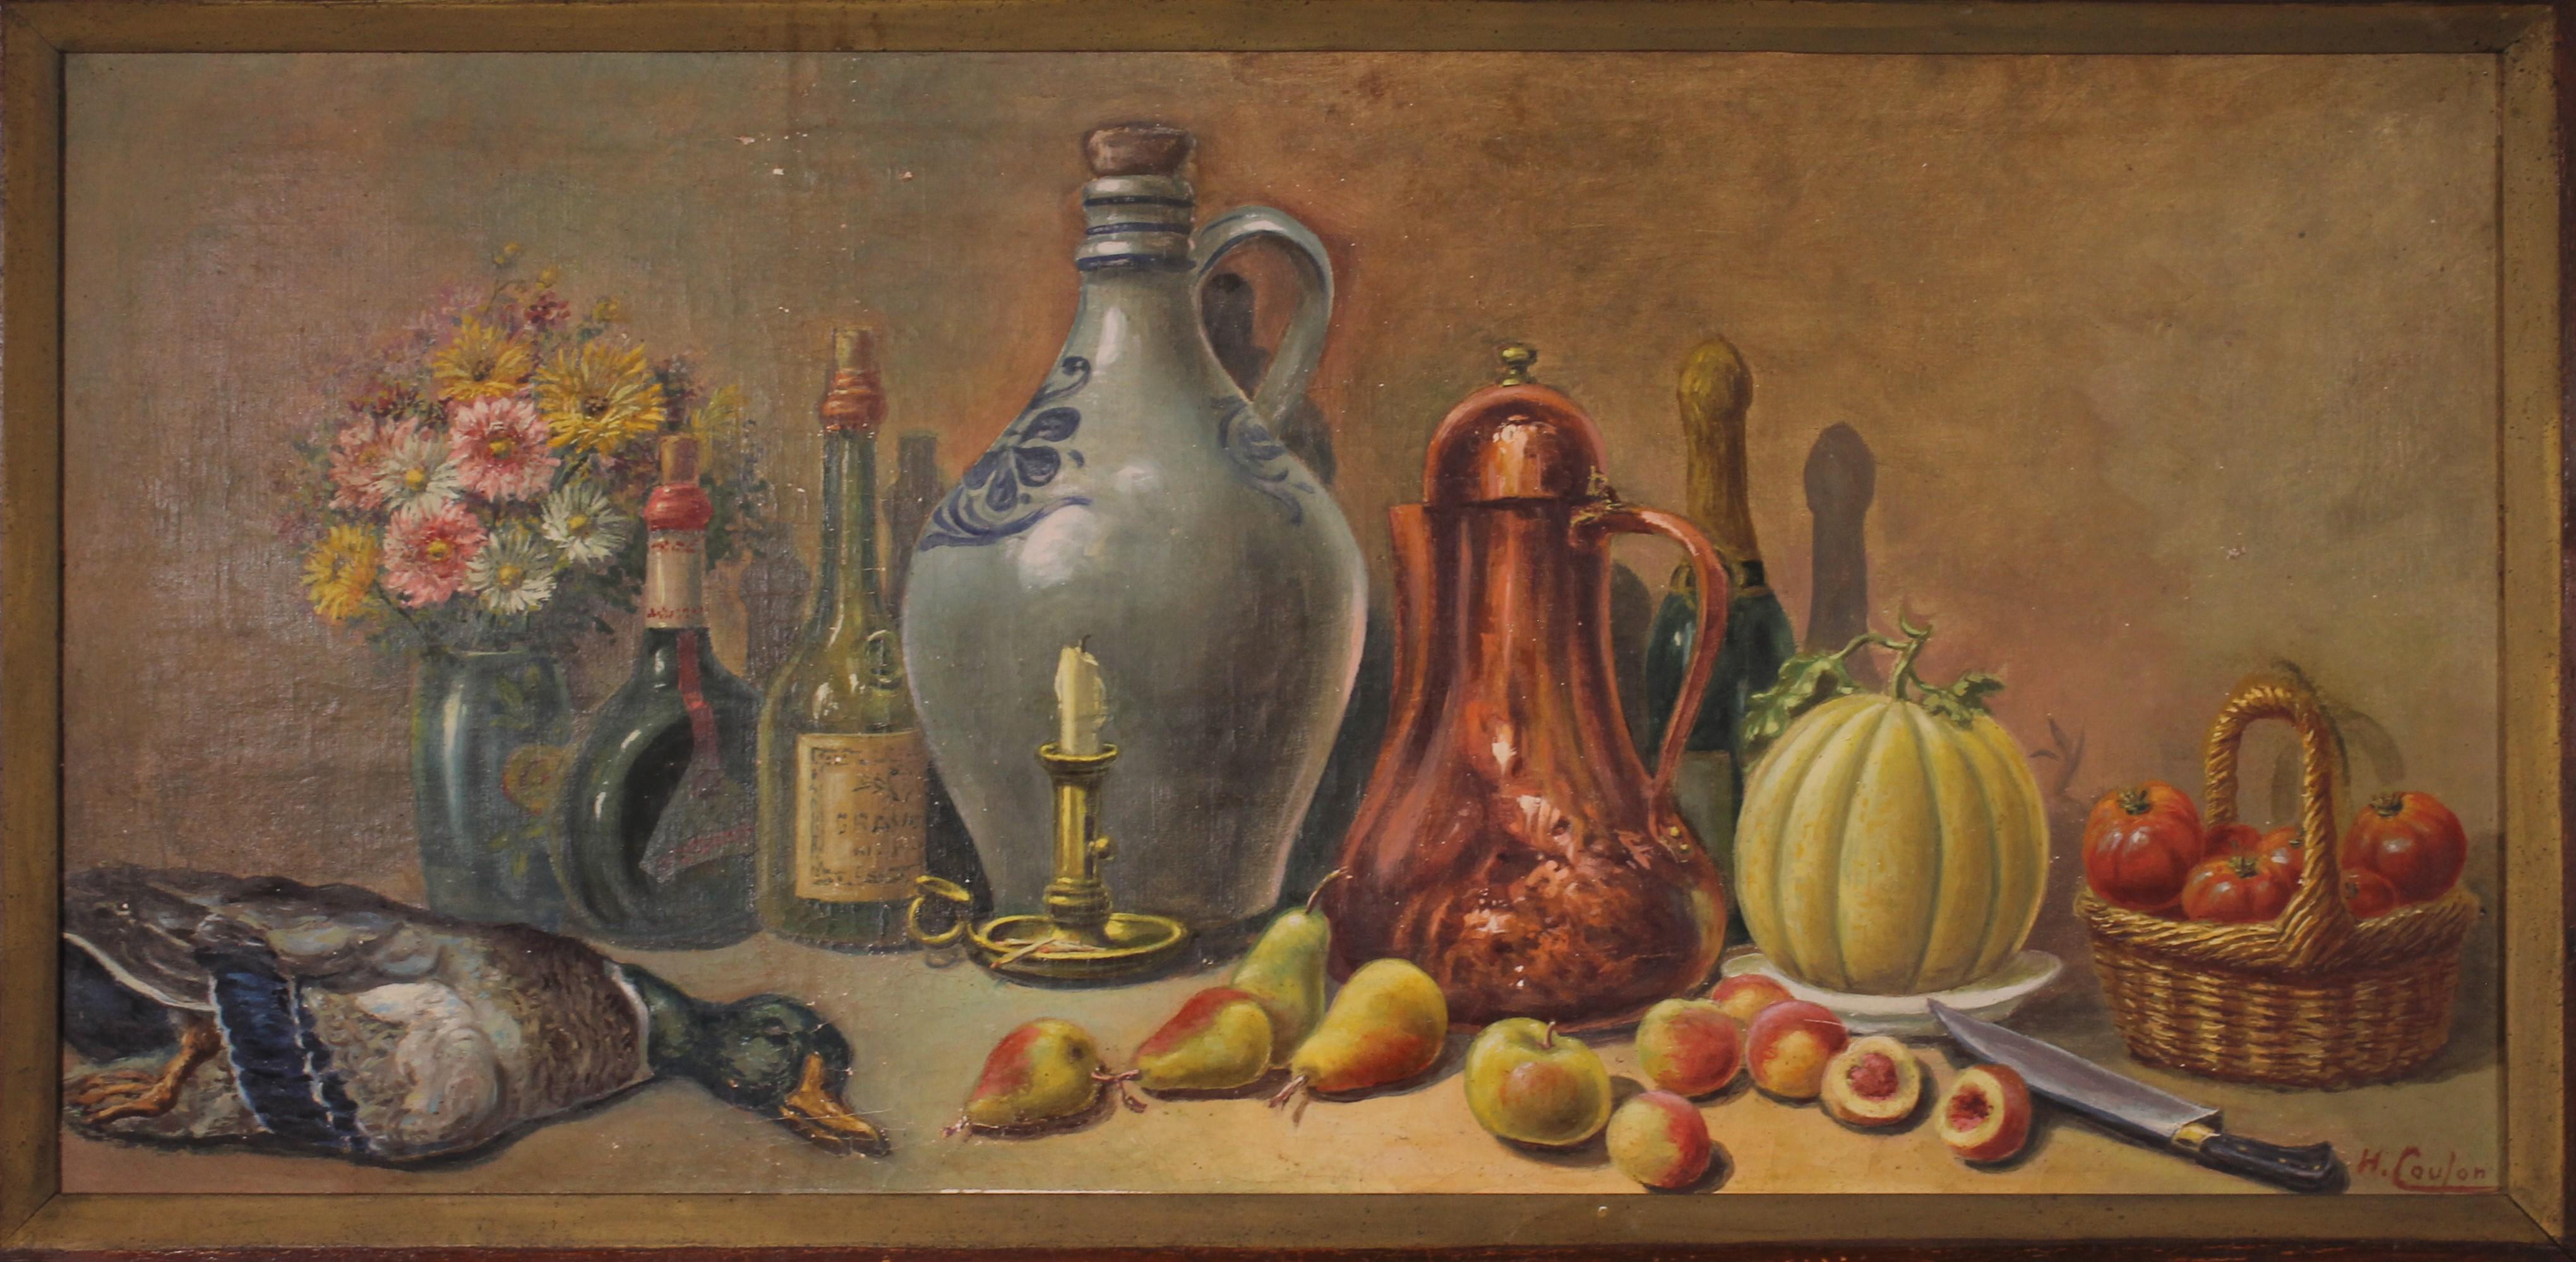 huile sur toile représentant une nature morte avec fruits, fleurs et gibier dans un cadre en bois signé H.Coulon
Grand modèle
En bon état et belle patine
